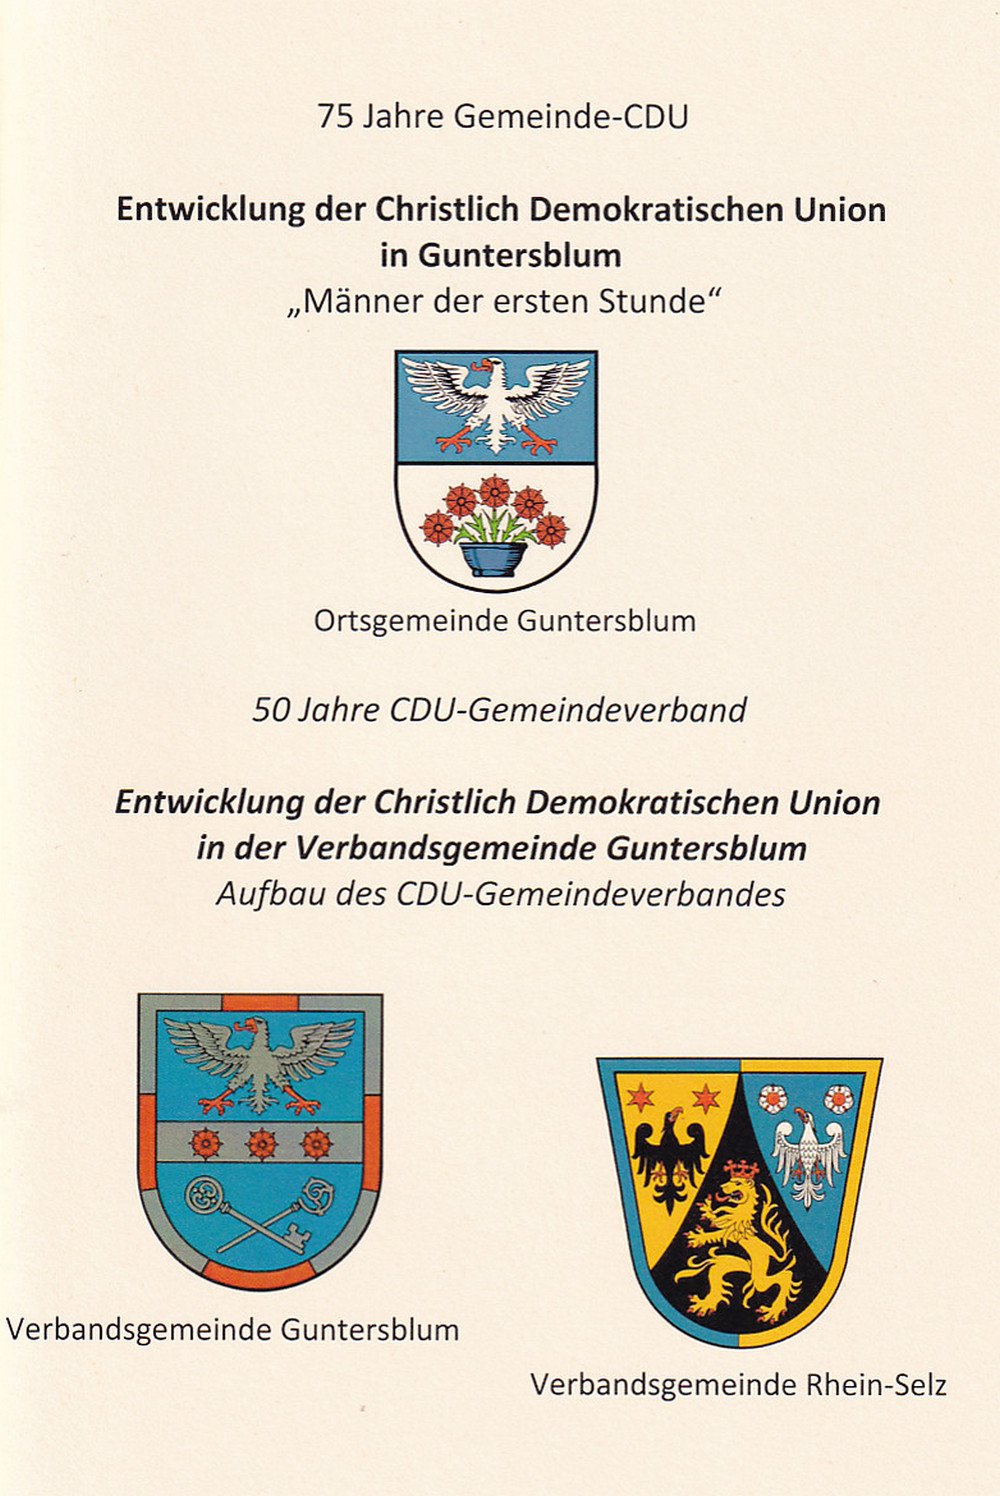 Entwicklung der Christlich Demokratischen Union in Guntersblum (Kulturverein Guntersblum CC BY-NC-SA)